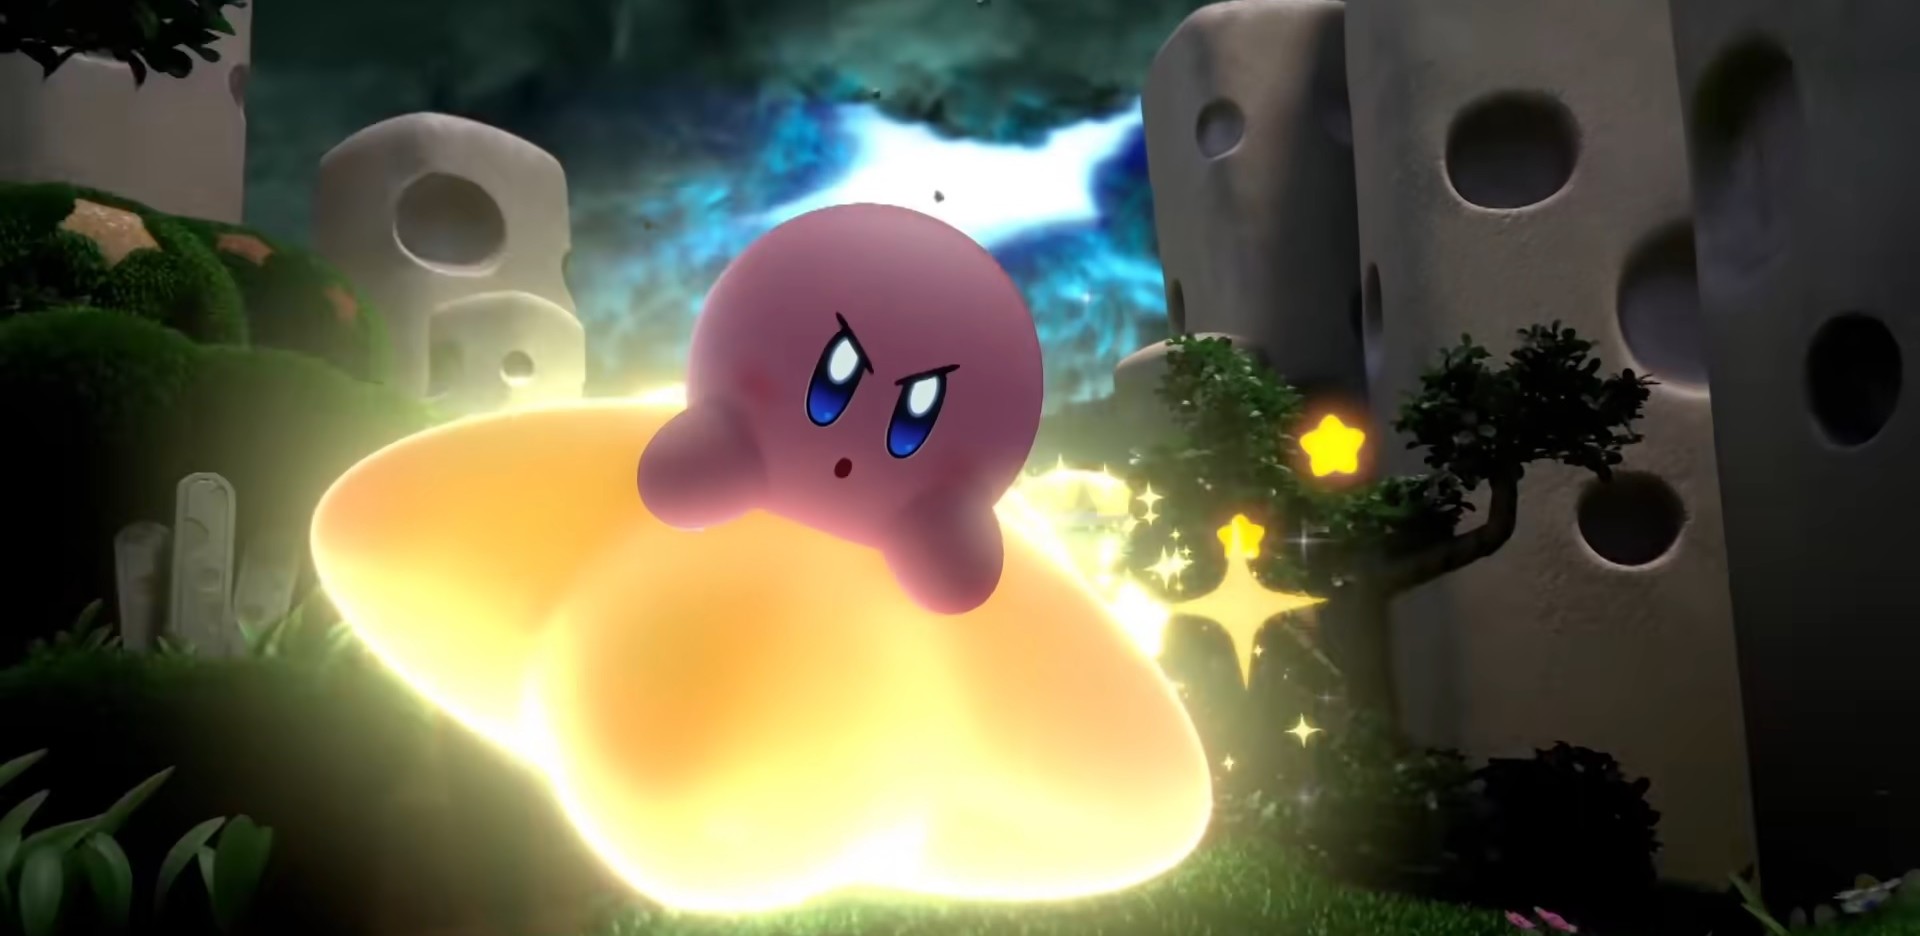 ทีมพัฒนาเผย การทำ Kirby ในรูปแบบ 3D คือความท้าทายครั้งใหม่